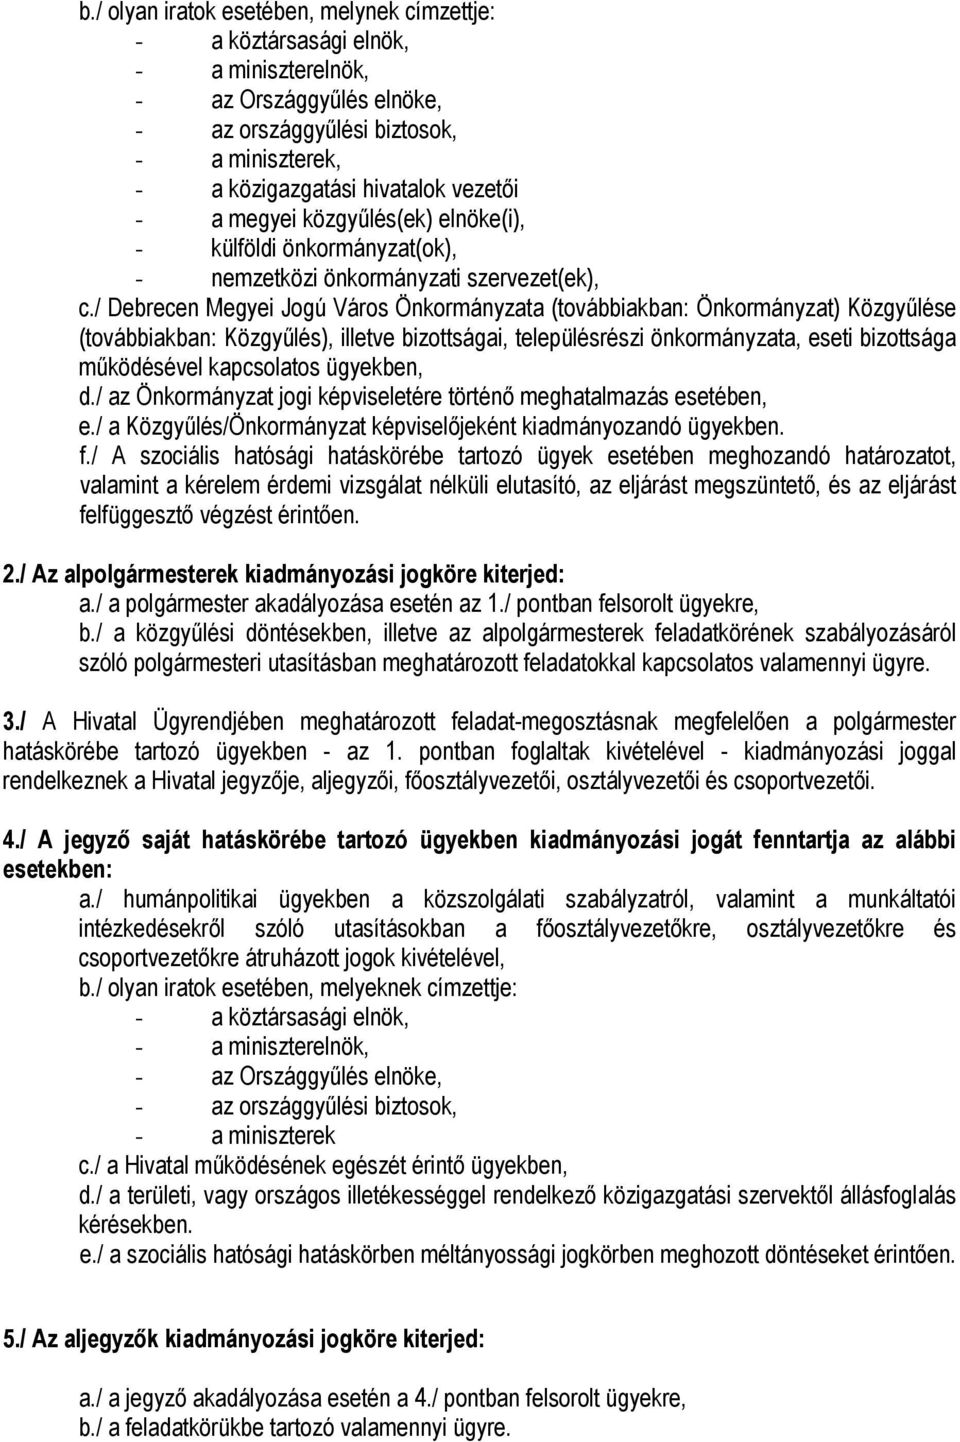 / Debrecen Megyei Jogú Város Önkormányzata (továbbiakban: Önkormányzat) Közgyűlése (továbbiakban: Közgyűlés), illetve bizottságai, településrészi önkormányzata, eseti bizottsága működésével